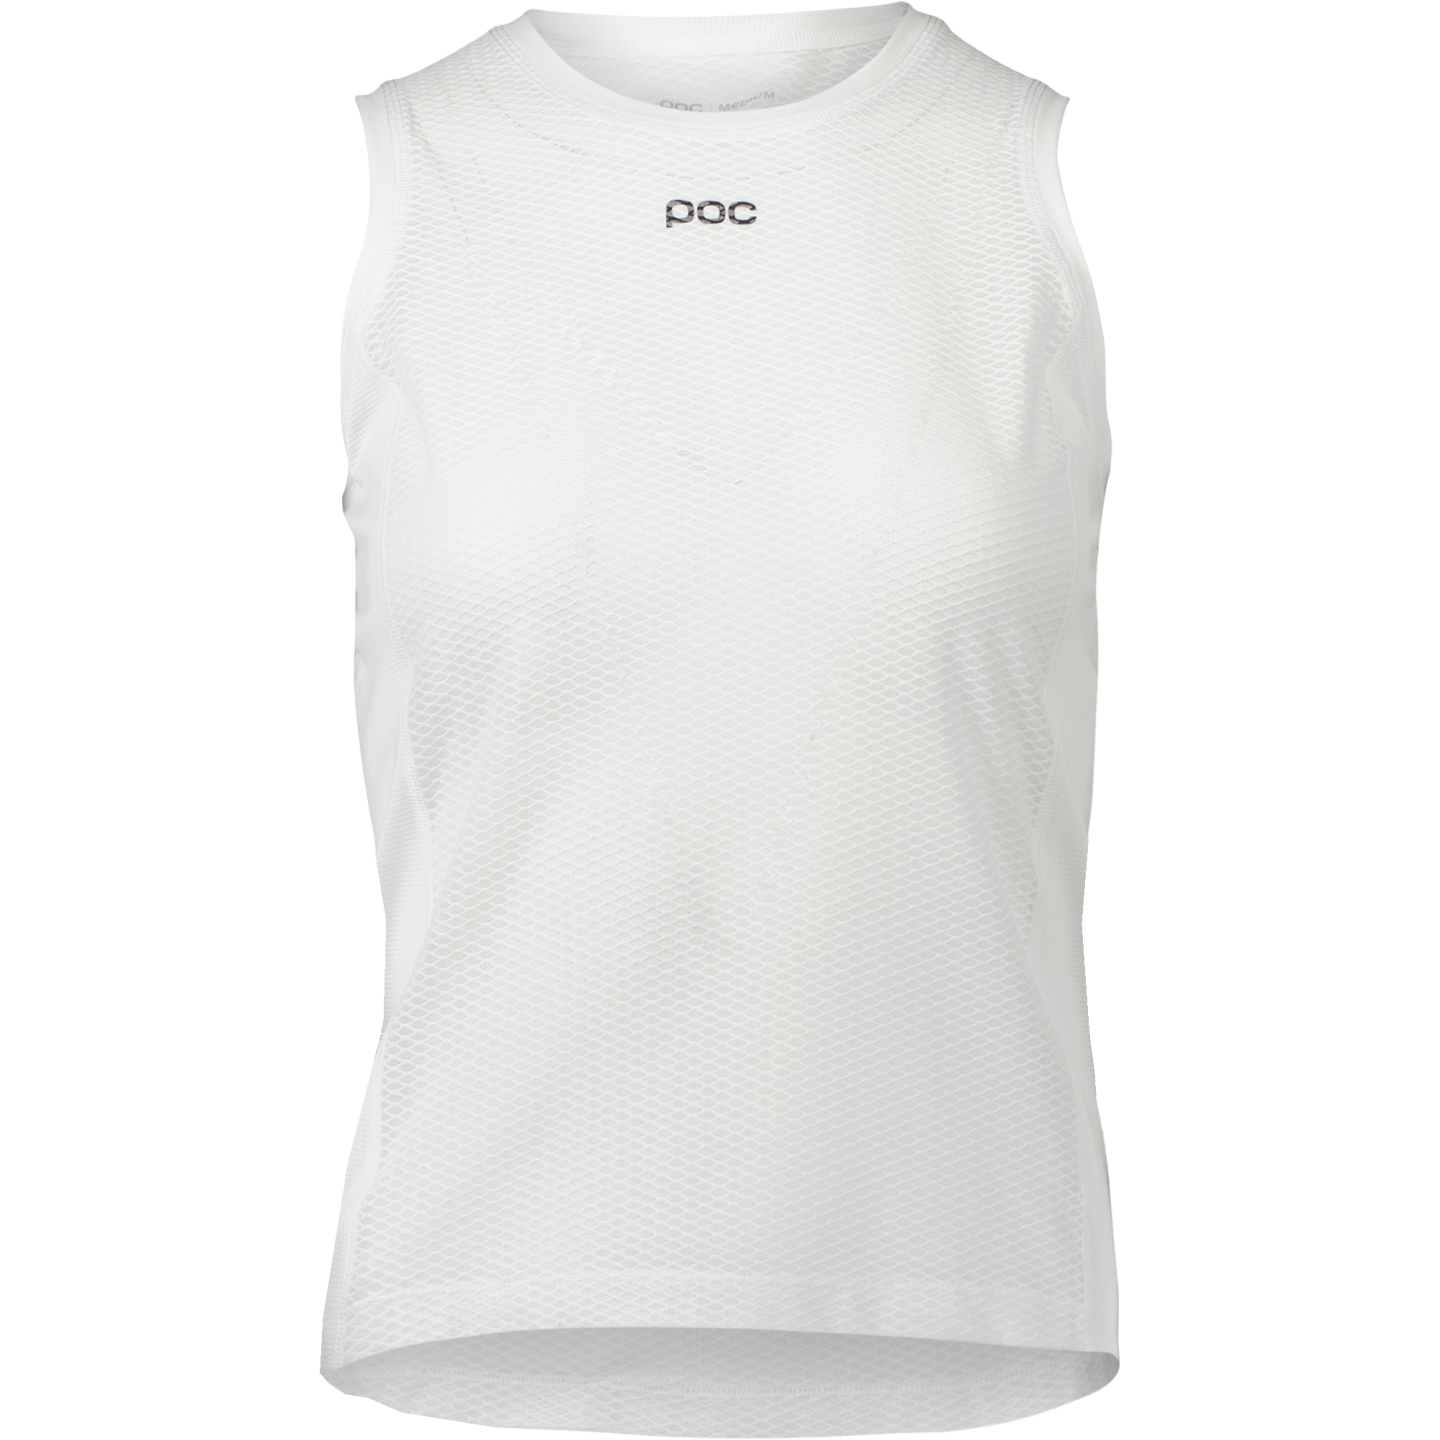 Produktbild von POC Essential Layer Unterhemd Damen - 1001 Hydrogen White